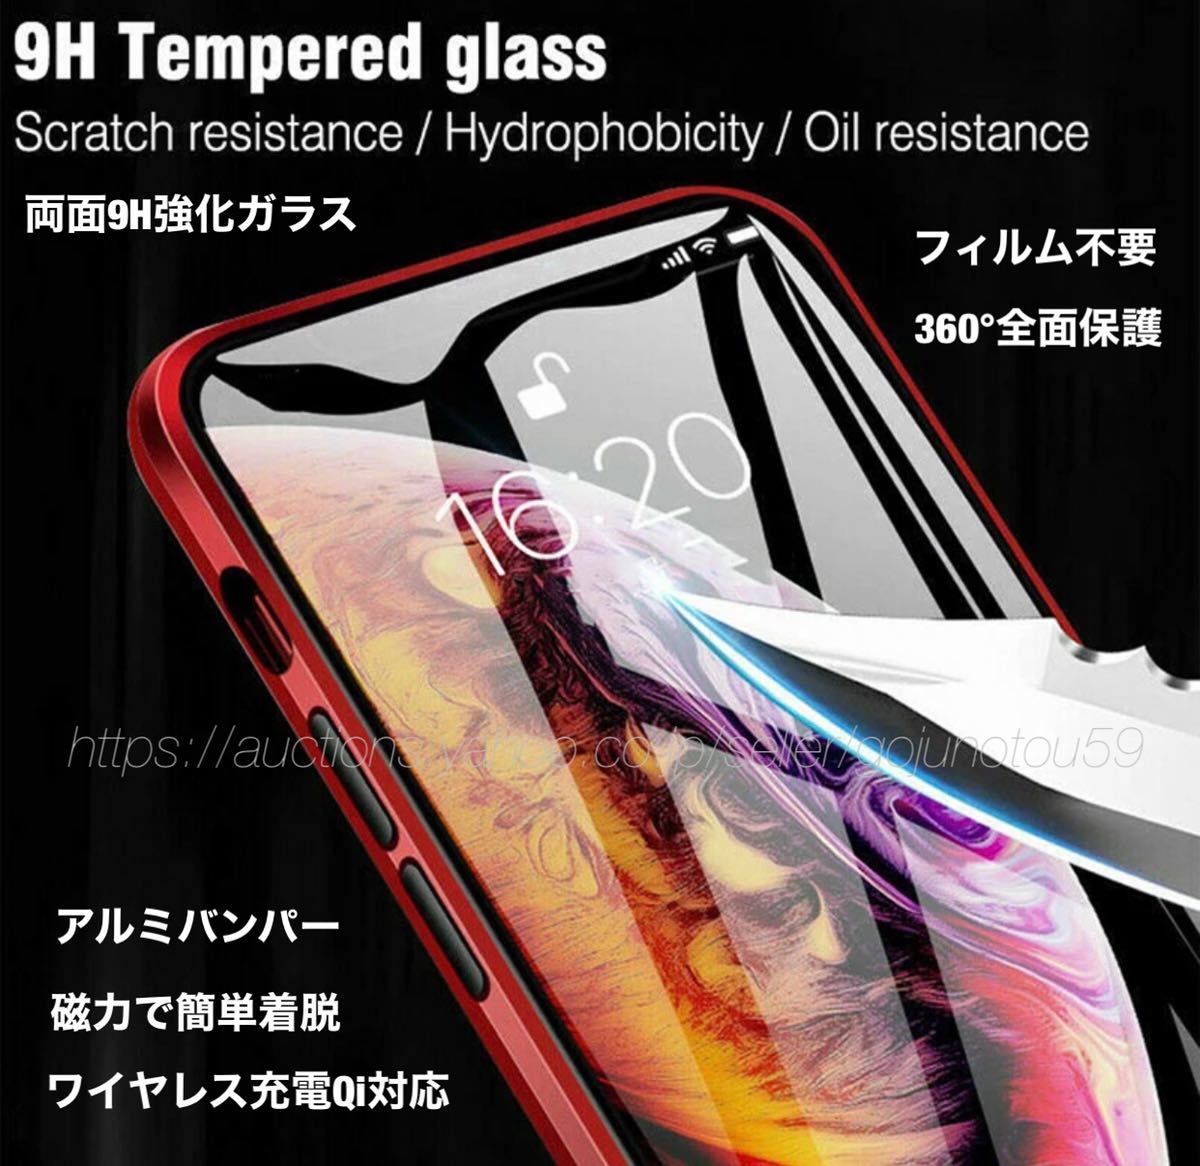 匿名送料無料 iPhone 12 12Pro スカイケース シルバー 美麗両面強化ガラス アルミバンパー 全面保護 Qi対応